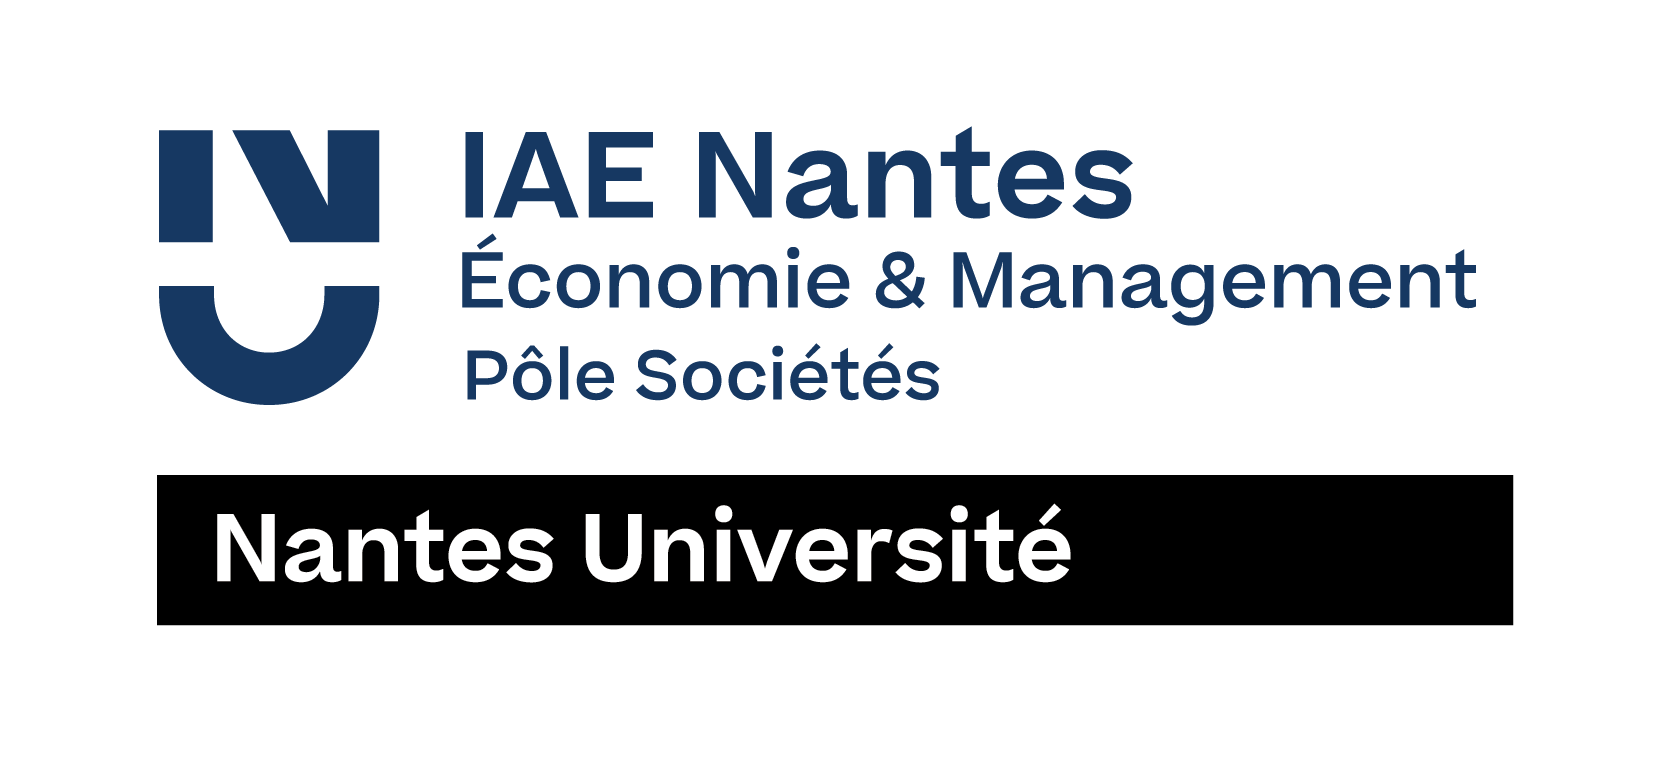 IAE Nantes - Économie & Management